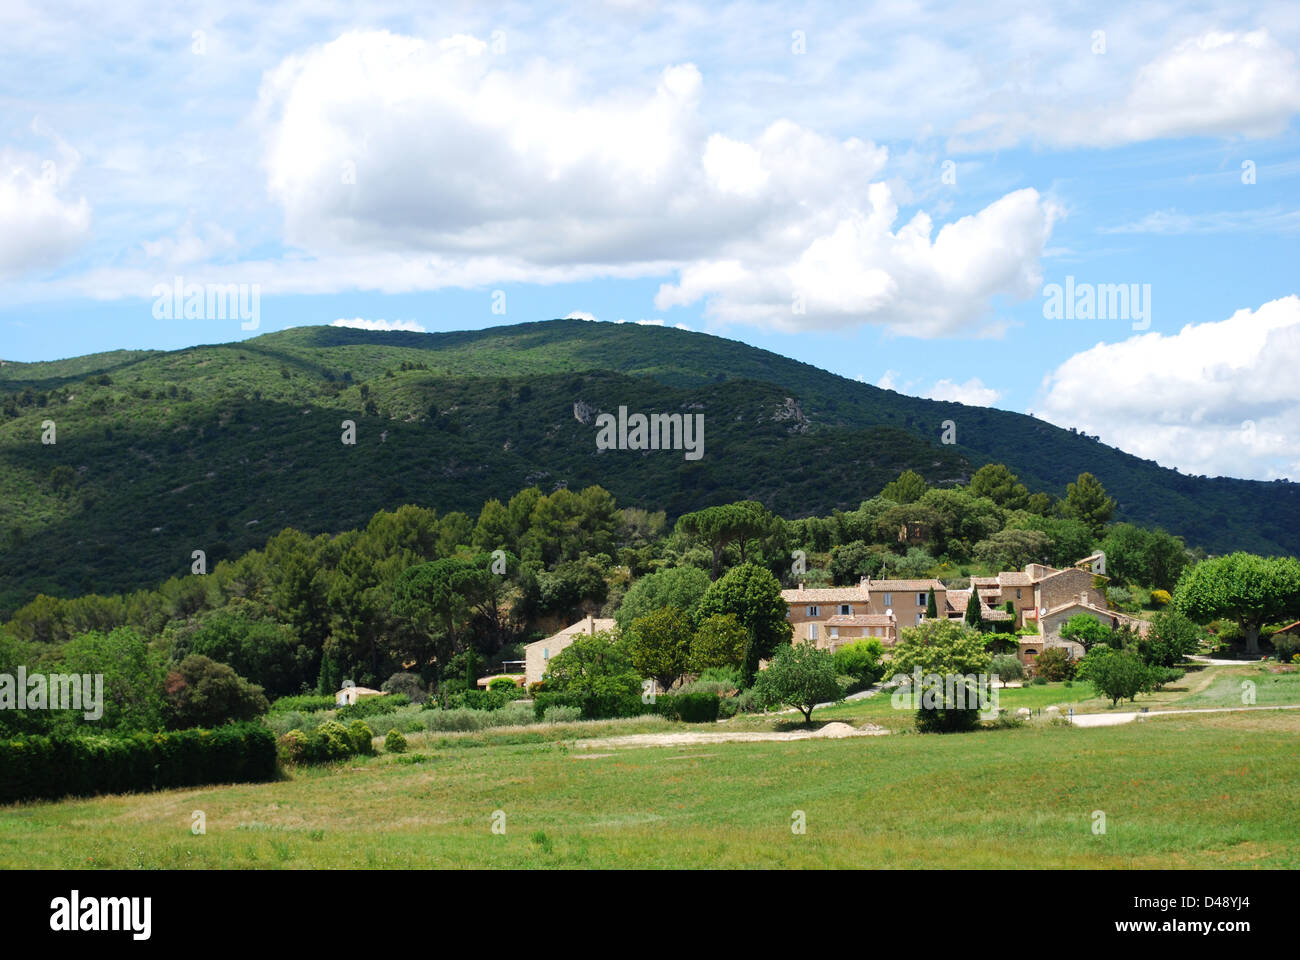 Typische Steinhäuser in Lourmarin Dorf, Departement Vaucluse, Provence, Frankreich Stockfoto